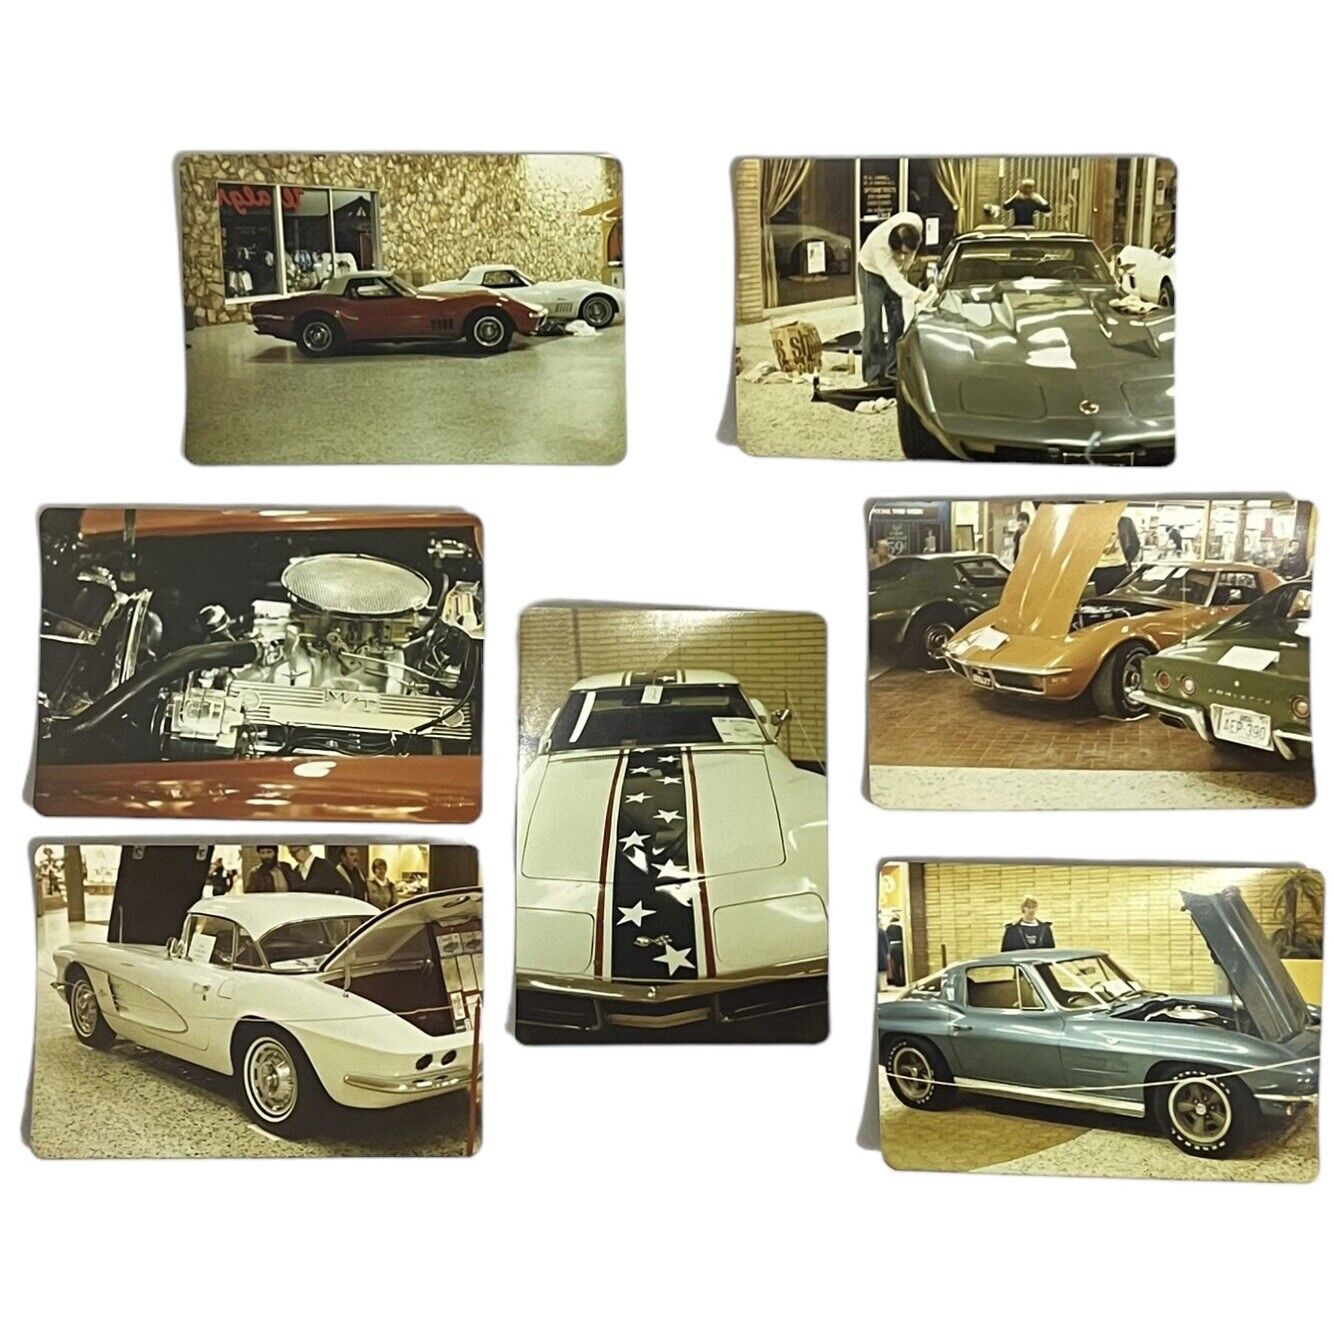 Vintage 1970's Corvette Car Show 3.5 x 5 Photo Lot of 7 C1 C2 C3 1961 1963 1969